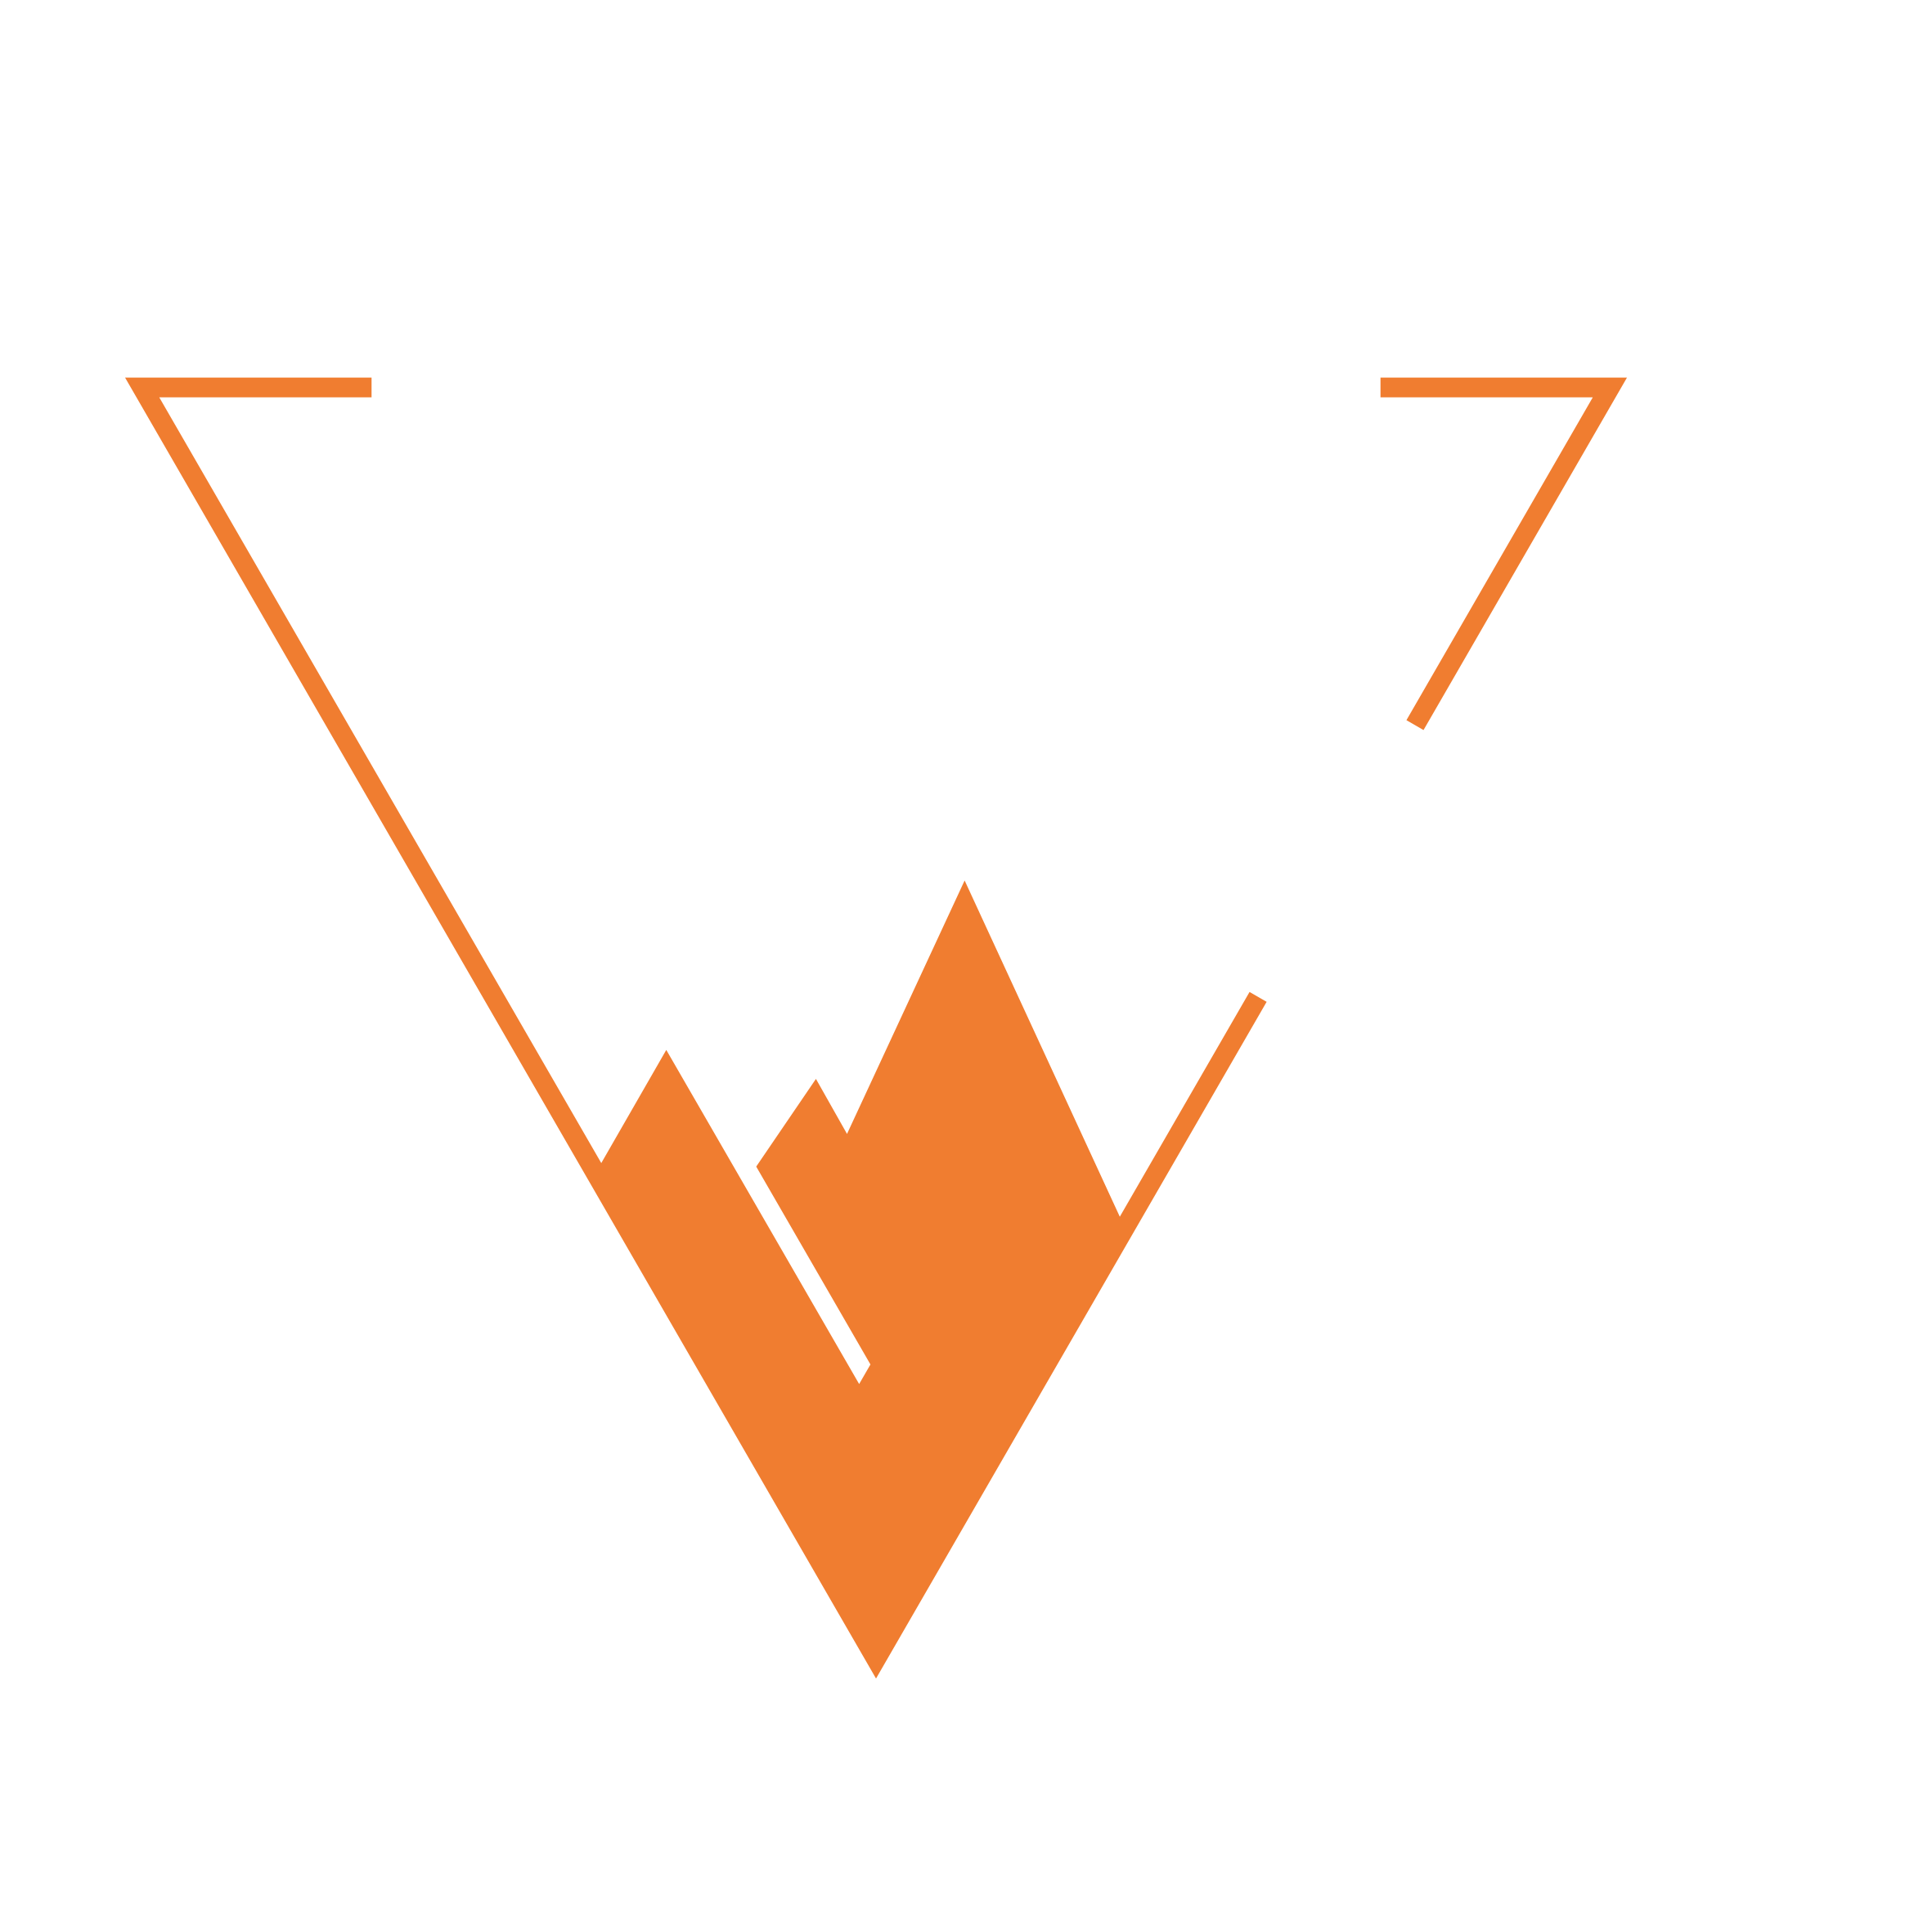 KletterBar Kiel